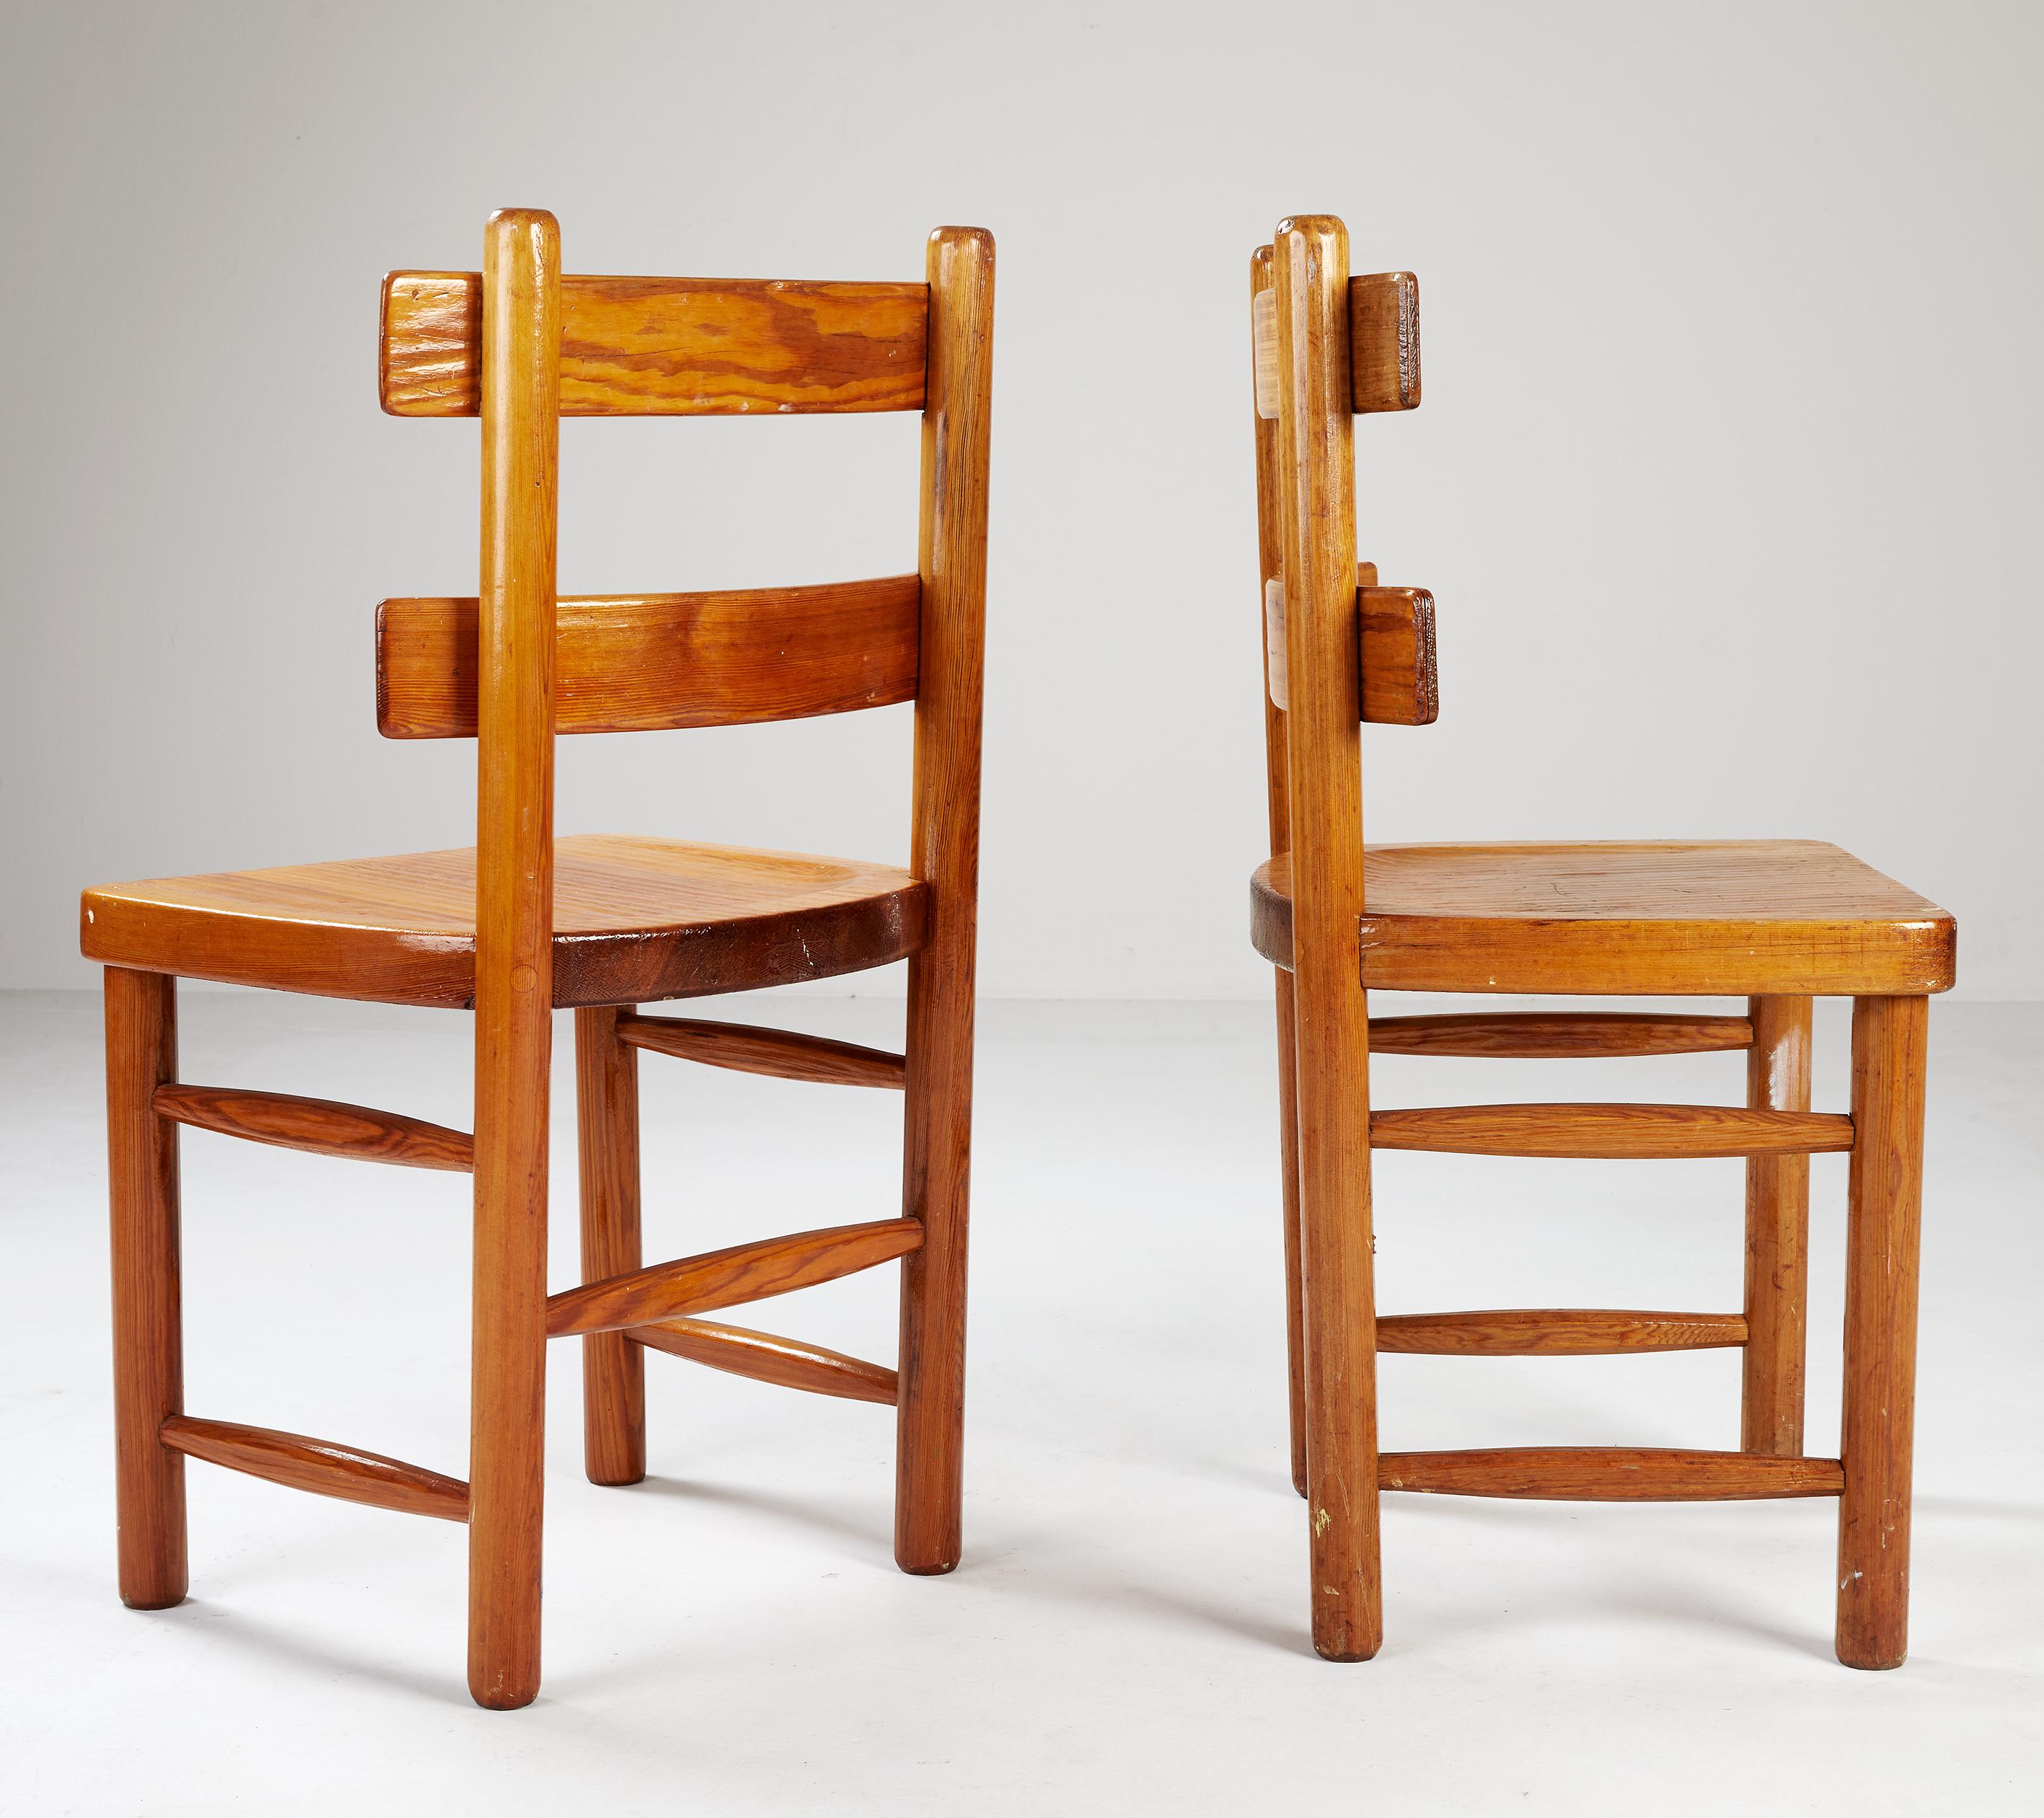 Une paire de chaises d'appoint ou de salle à manger du designer et architecte suédois Axel Einar Hjorth, exécutée par Nordiska Kompaniet en avril 1929. Numéro enregistré dans l'index des dessins NK.
Tous deux sont marqués d'une plaque métallique du